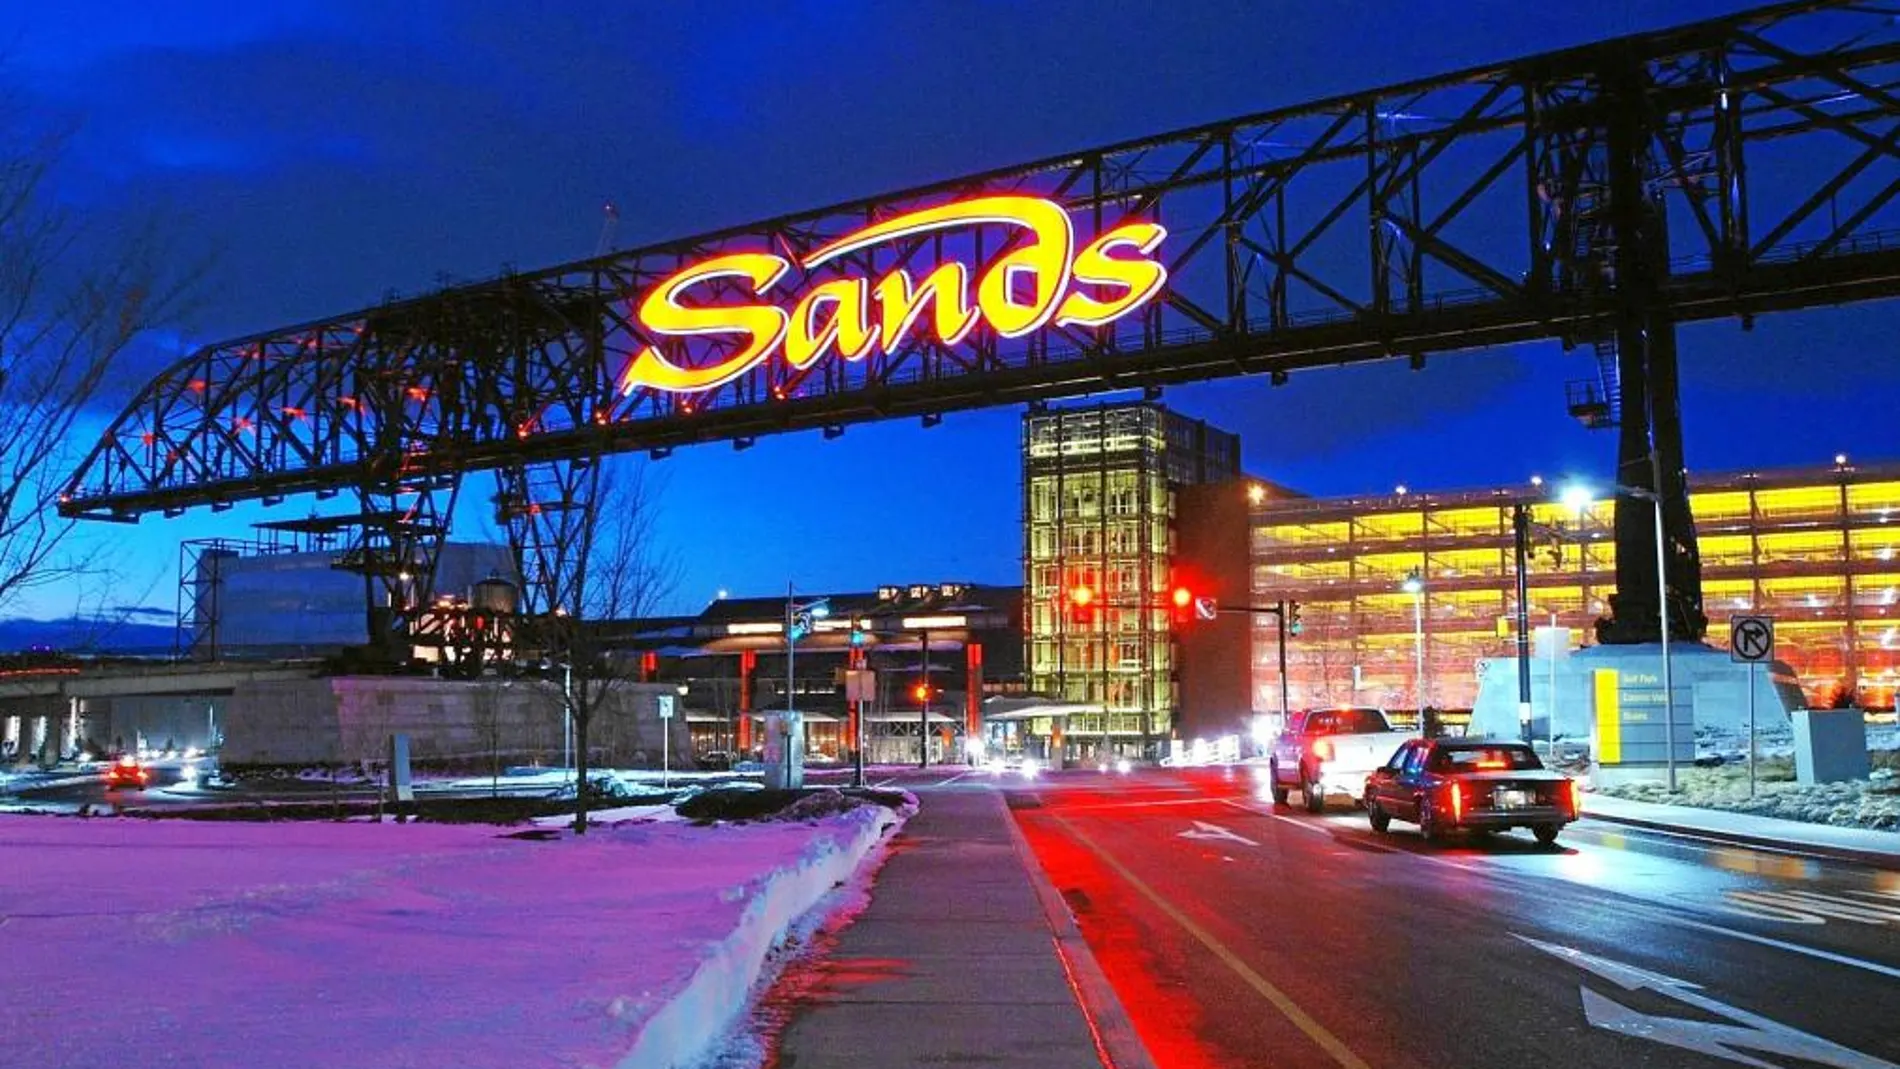 El casino que Sands posee en Bethlehem (Pensilvania) cuenta con 300 habitaciones, un enorme centro comercial, varios casinos y una «miniciudad» del ocio.